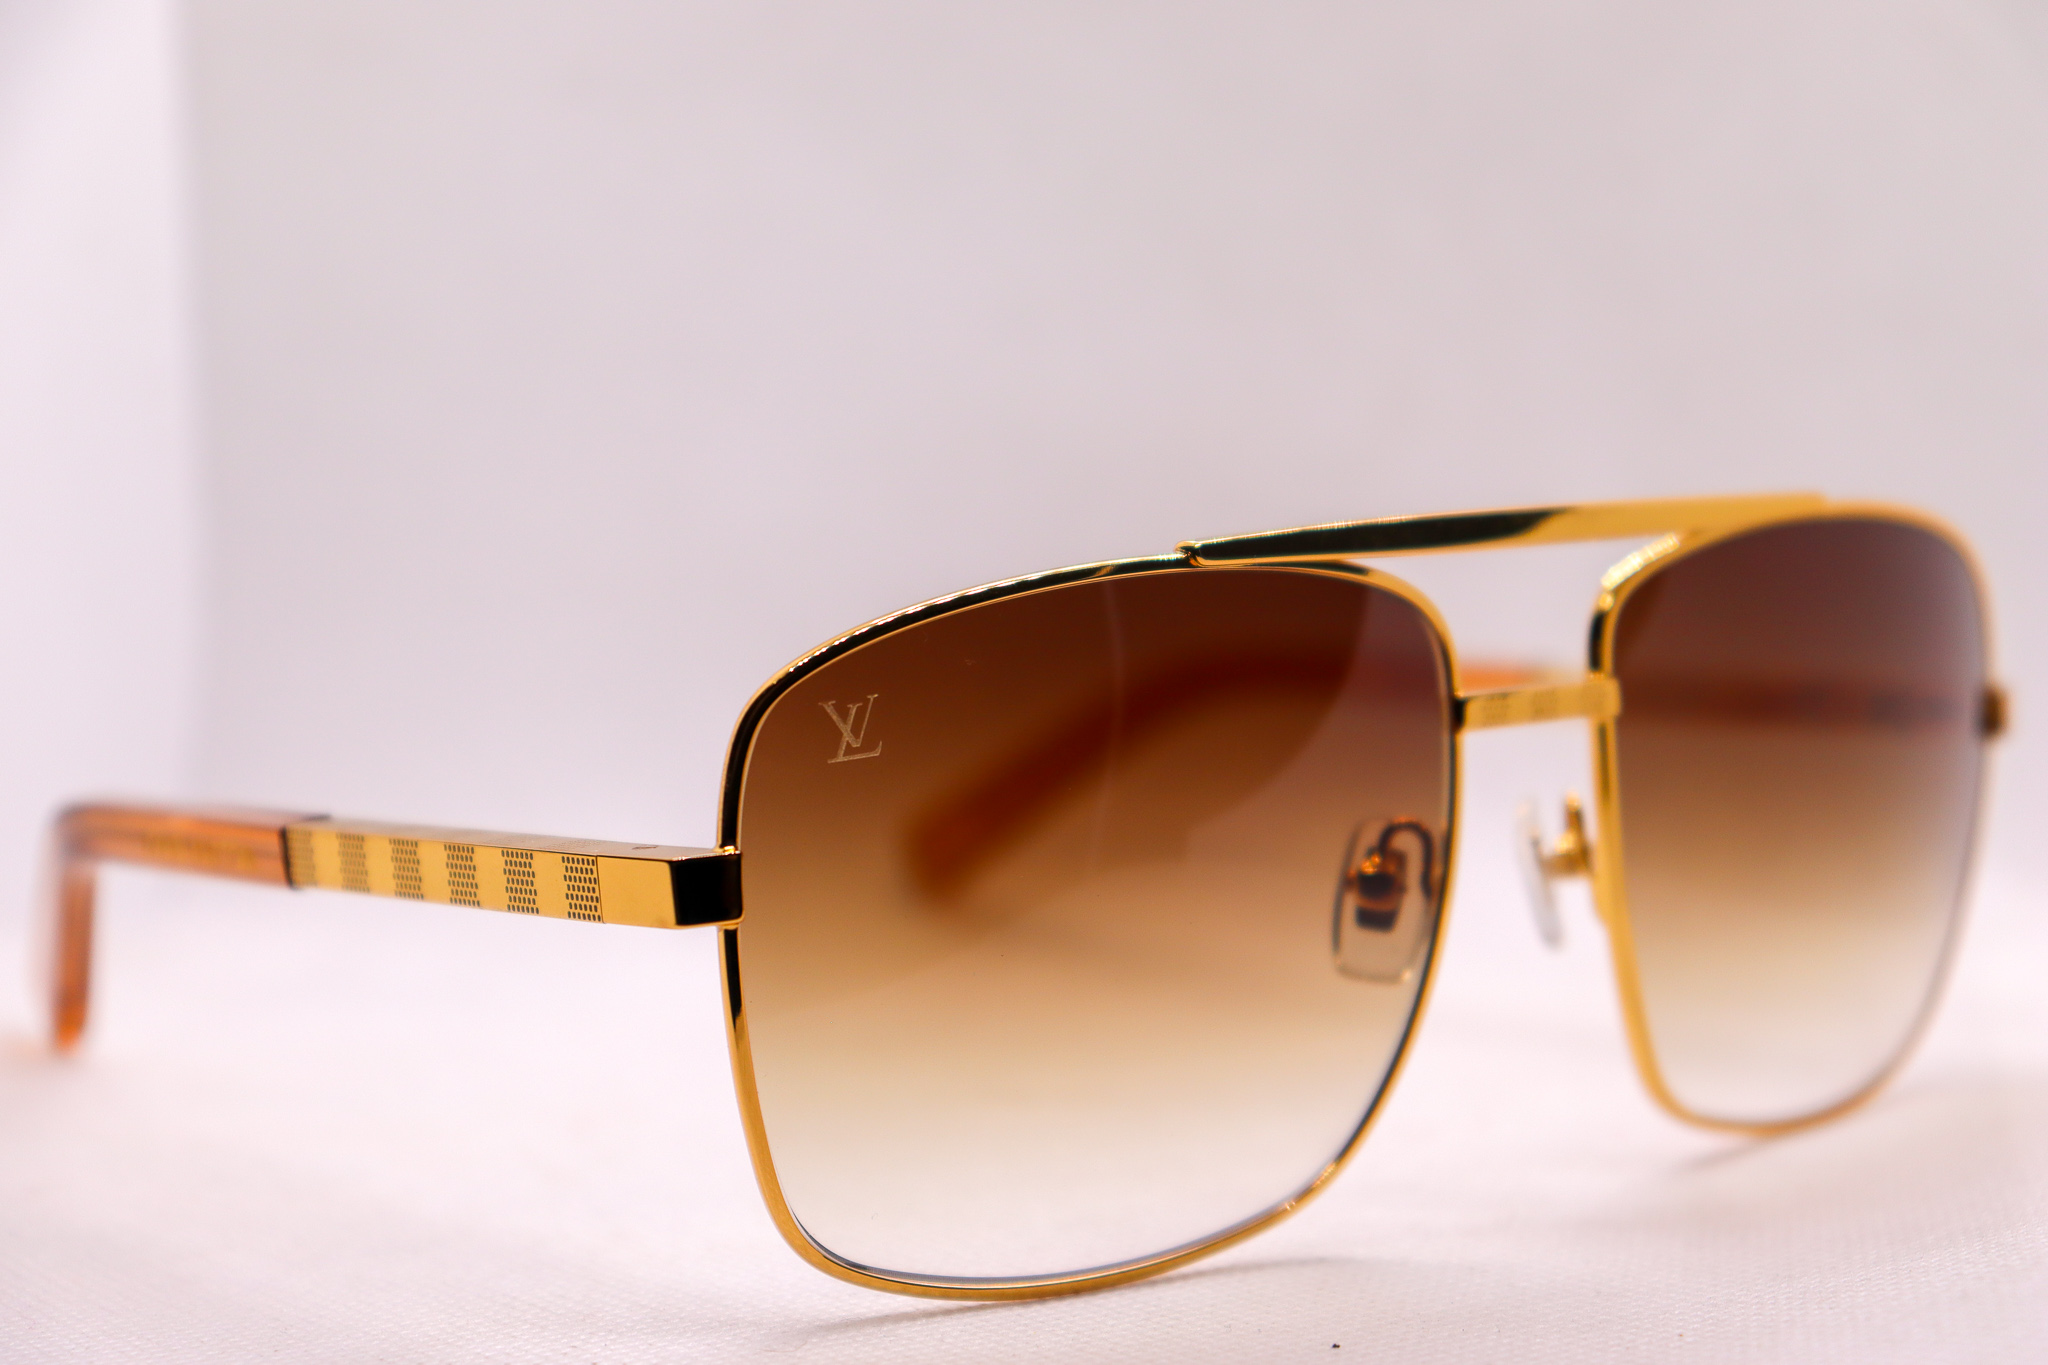 Louis Vuitton LV Attitude 259 Sunglasses Price in Pakistan 2020 | Louis  Vuitton Sunglasses Price 